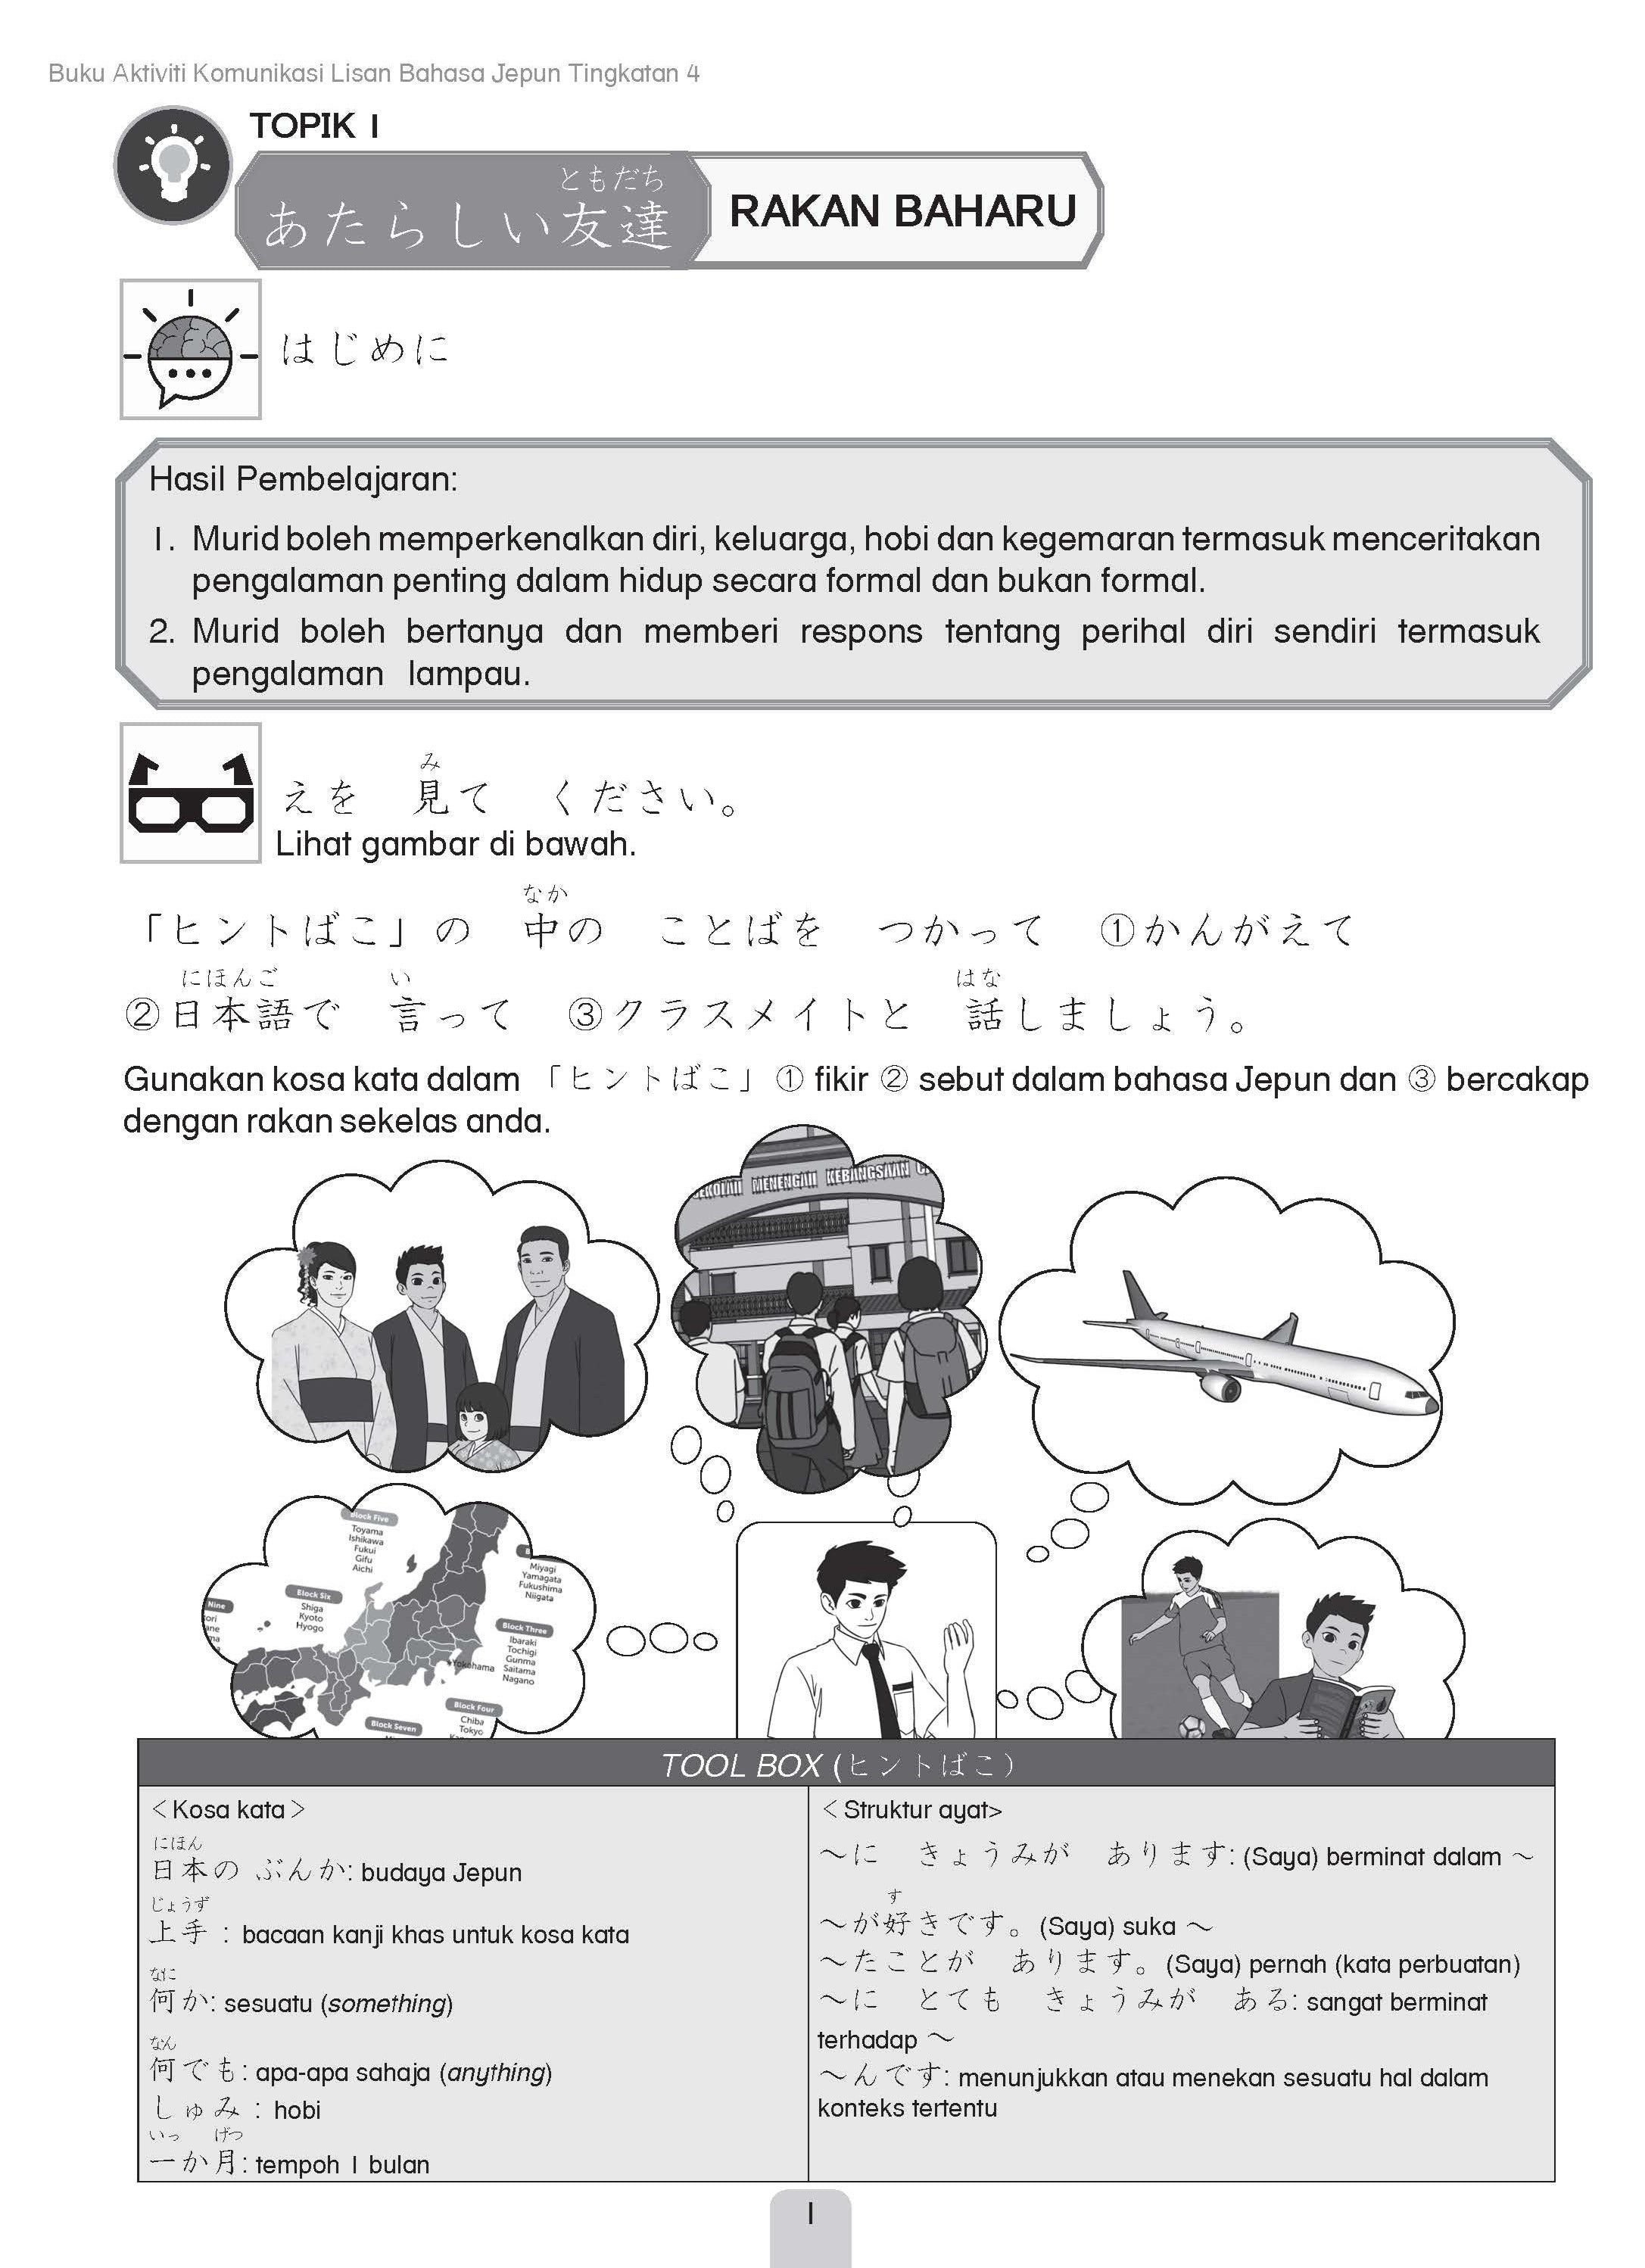 Maximum Practice SPM - Buku Aktiviti Komunikasi Lisan Bahasa Jepun Tingkatan 4 - (TBBS1272)